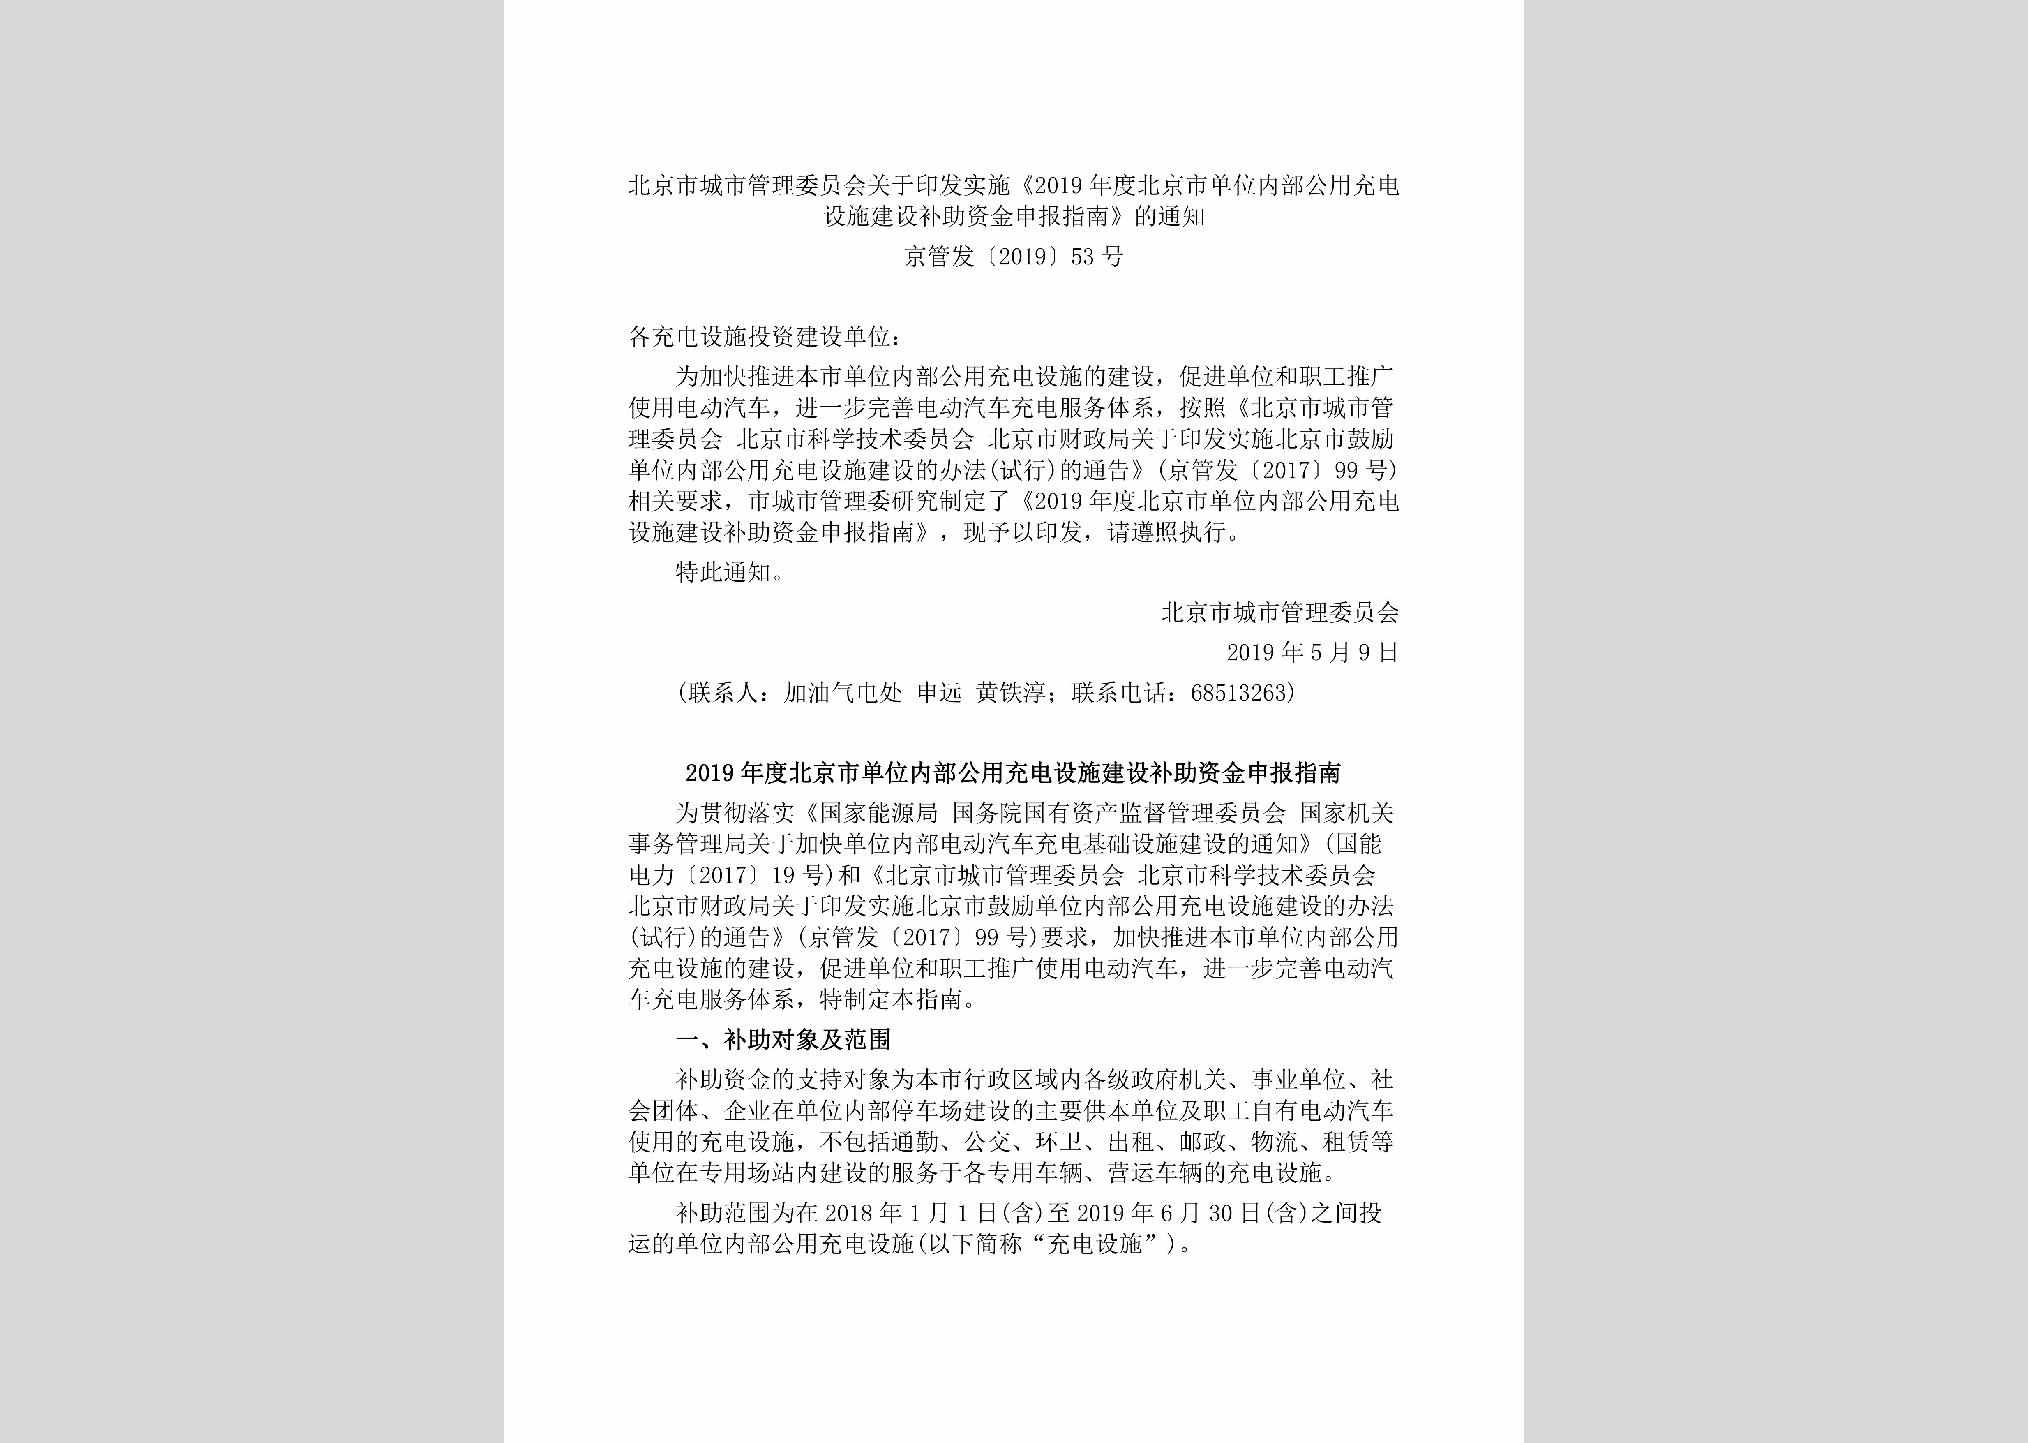 京管发[2019]53号：北京市城市管理委员会关于印发实施《2019年度北京市单位内部公用充电设施建设补助资金申报指南》的通知